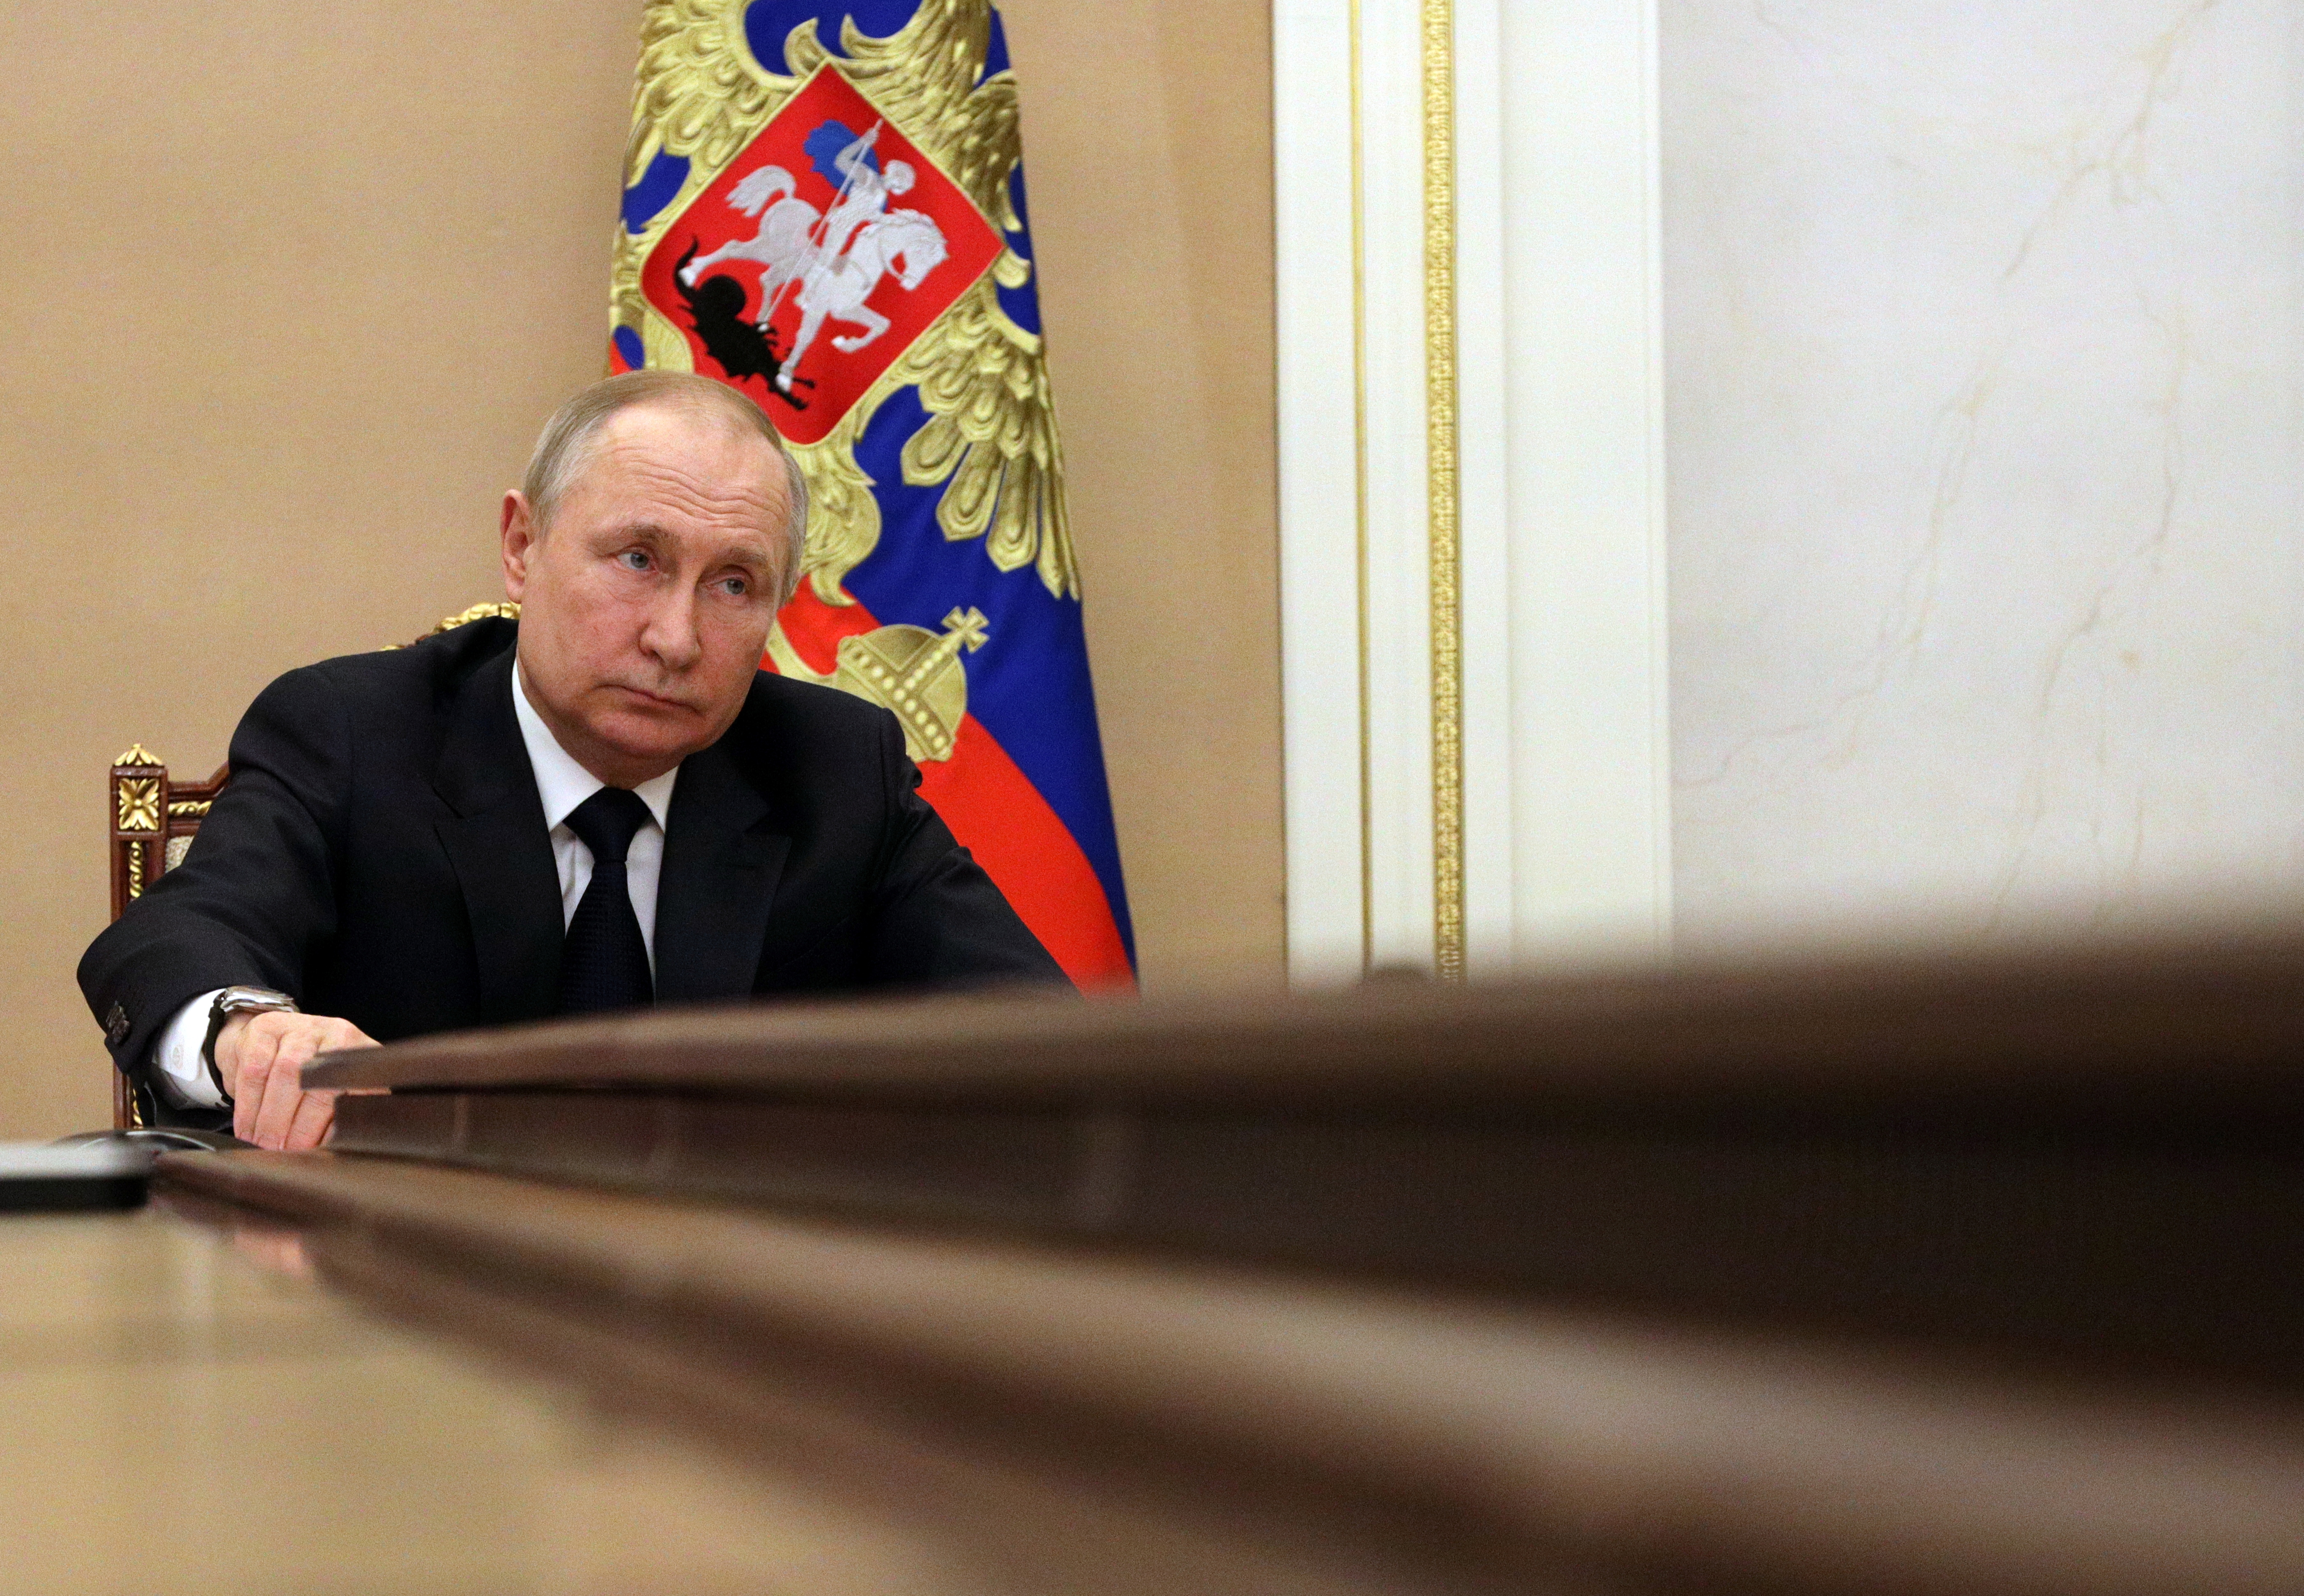 Les autorités russes évoquent la saisie d'avoirs de pays jugés hostiles